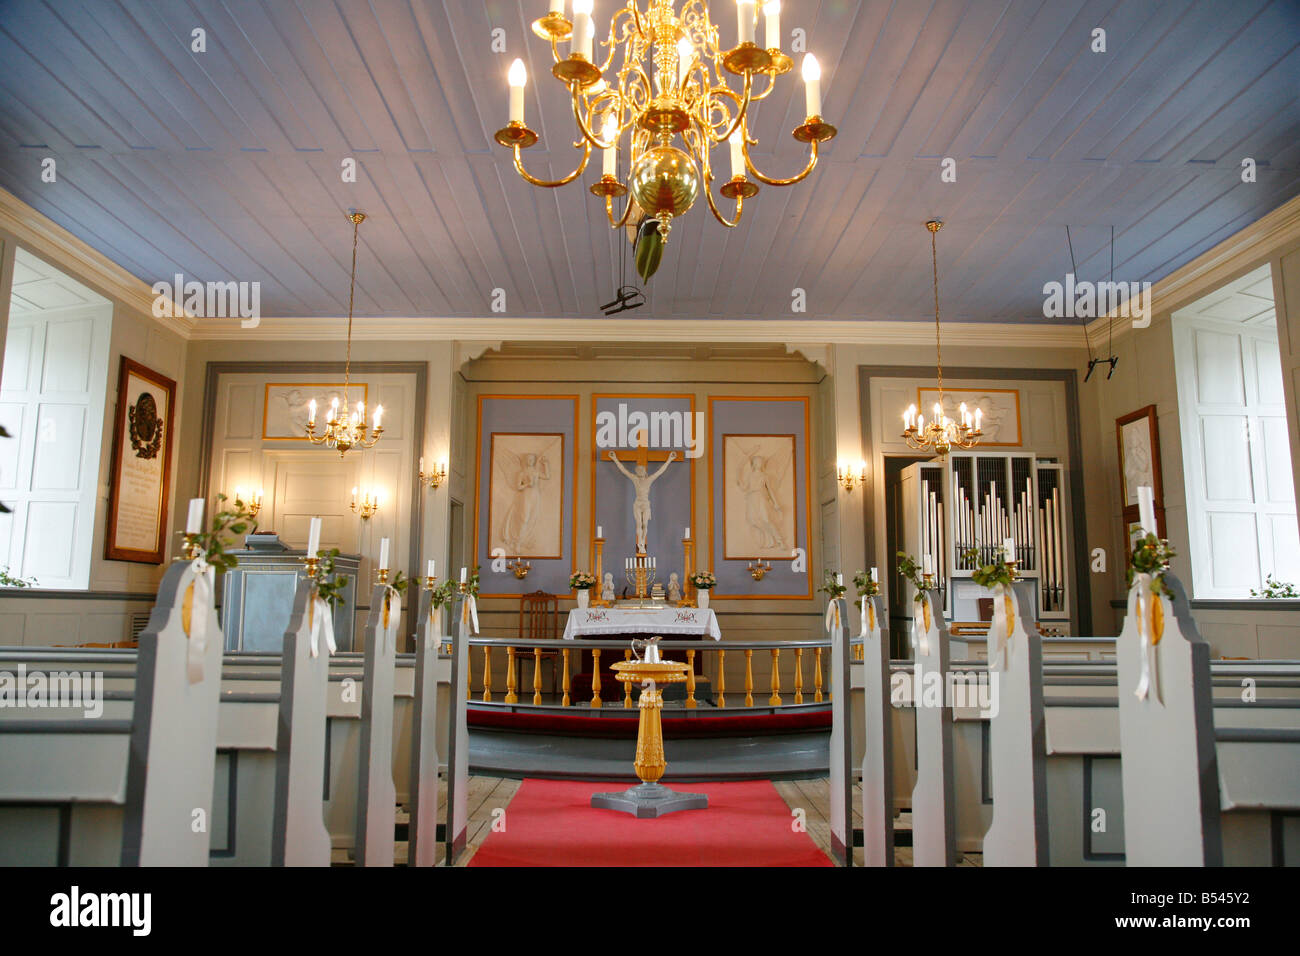 Août 2008 - Kirke Frelsers avec notre sauveur dans l'Église Kolonihavn Nuuk Groenland Banque D'Images